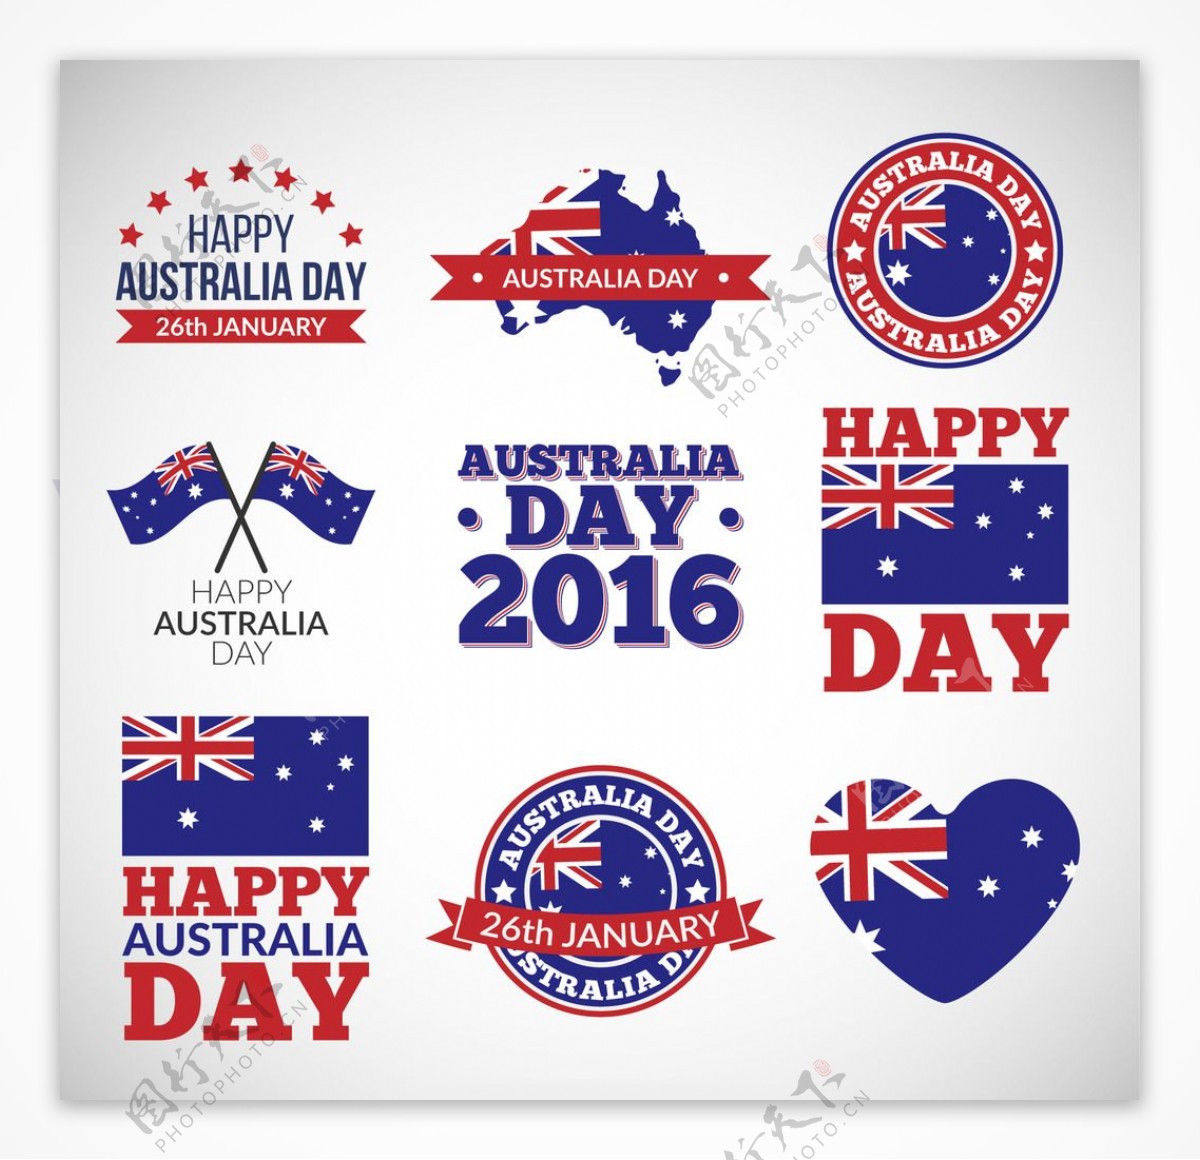 澳大利亚国庆日徽章